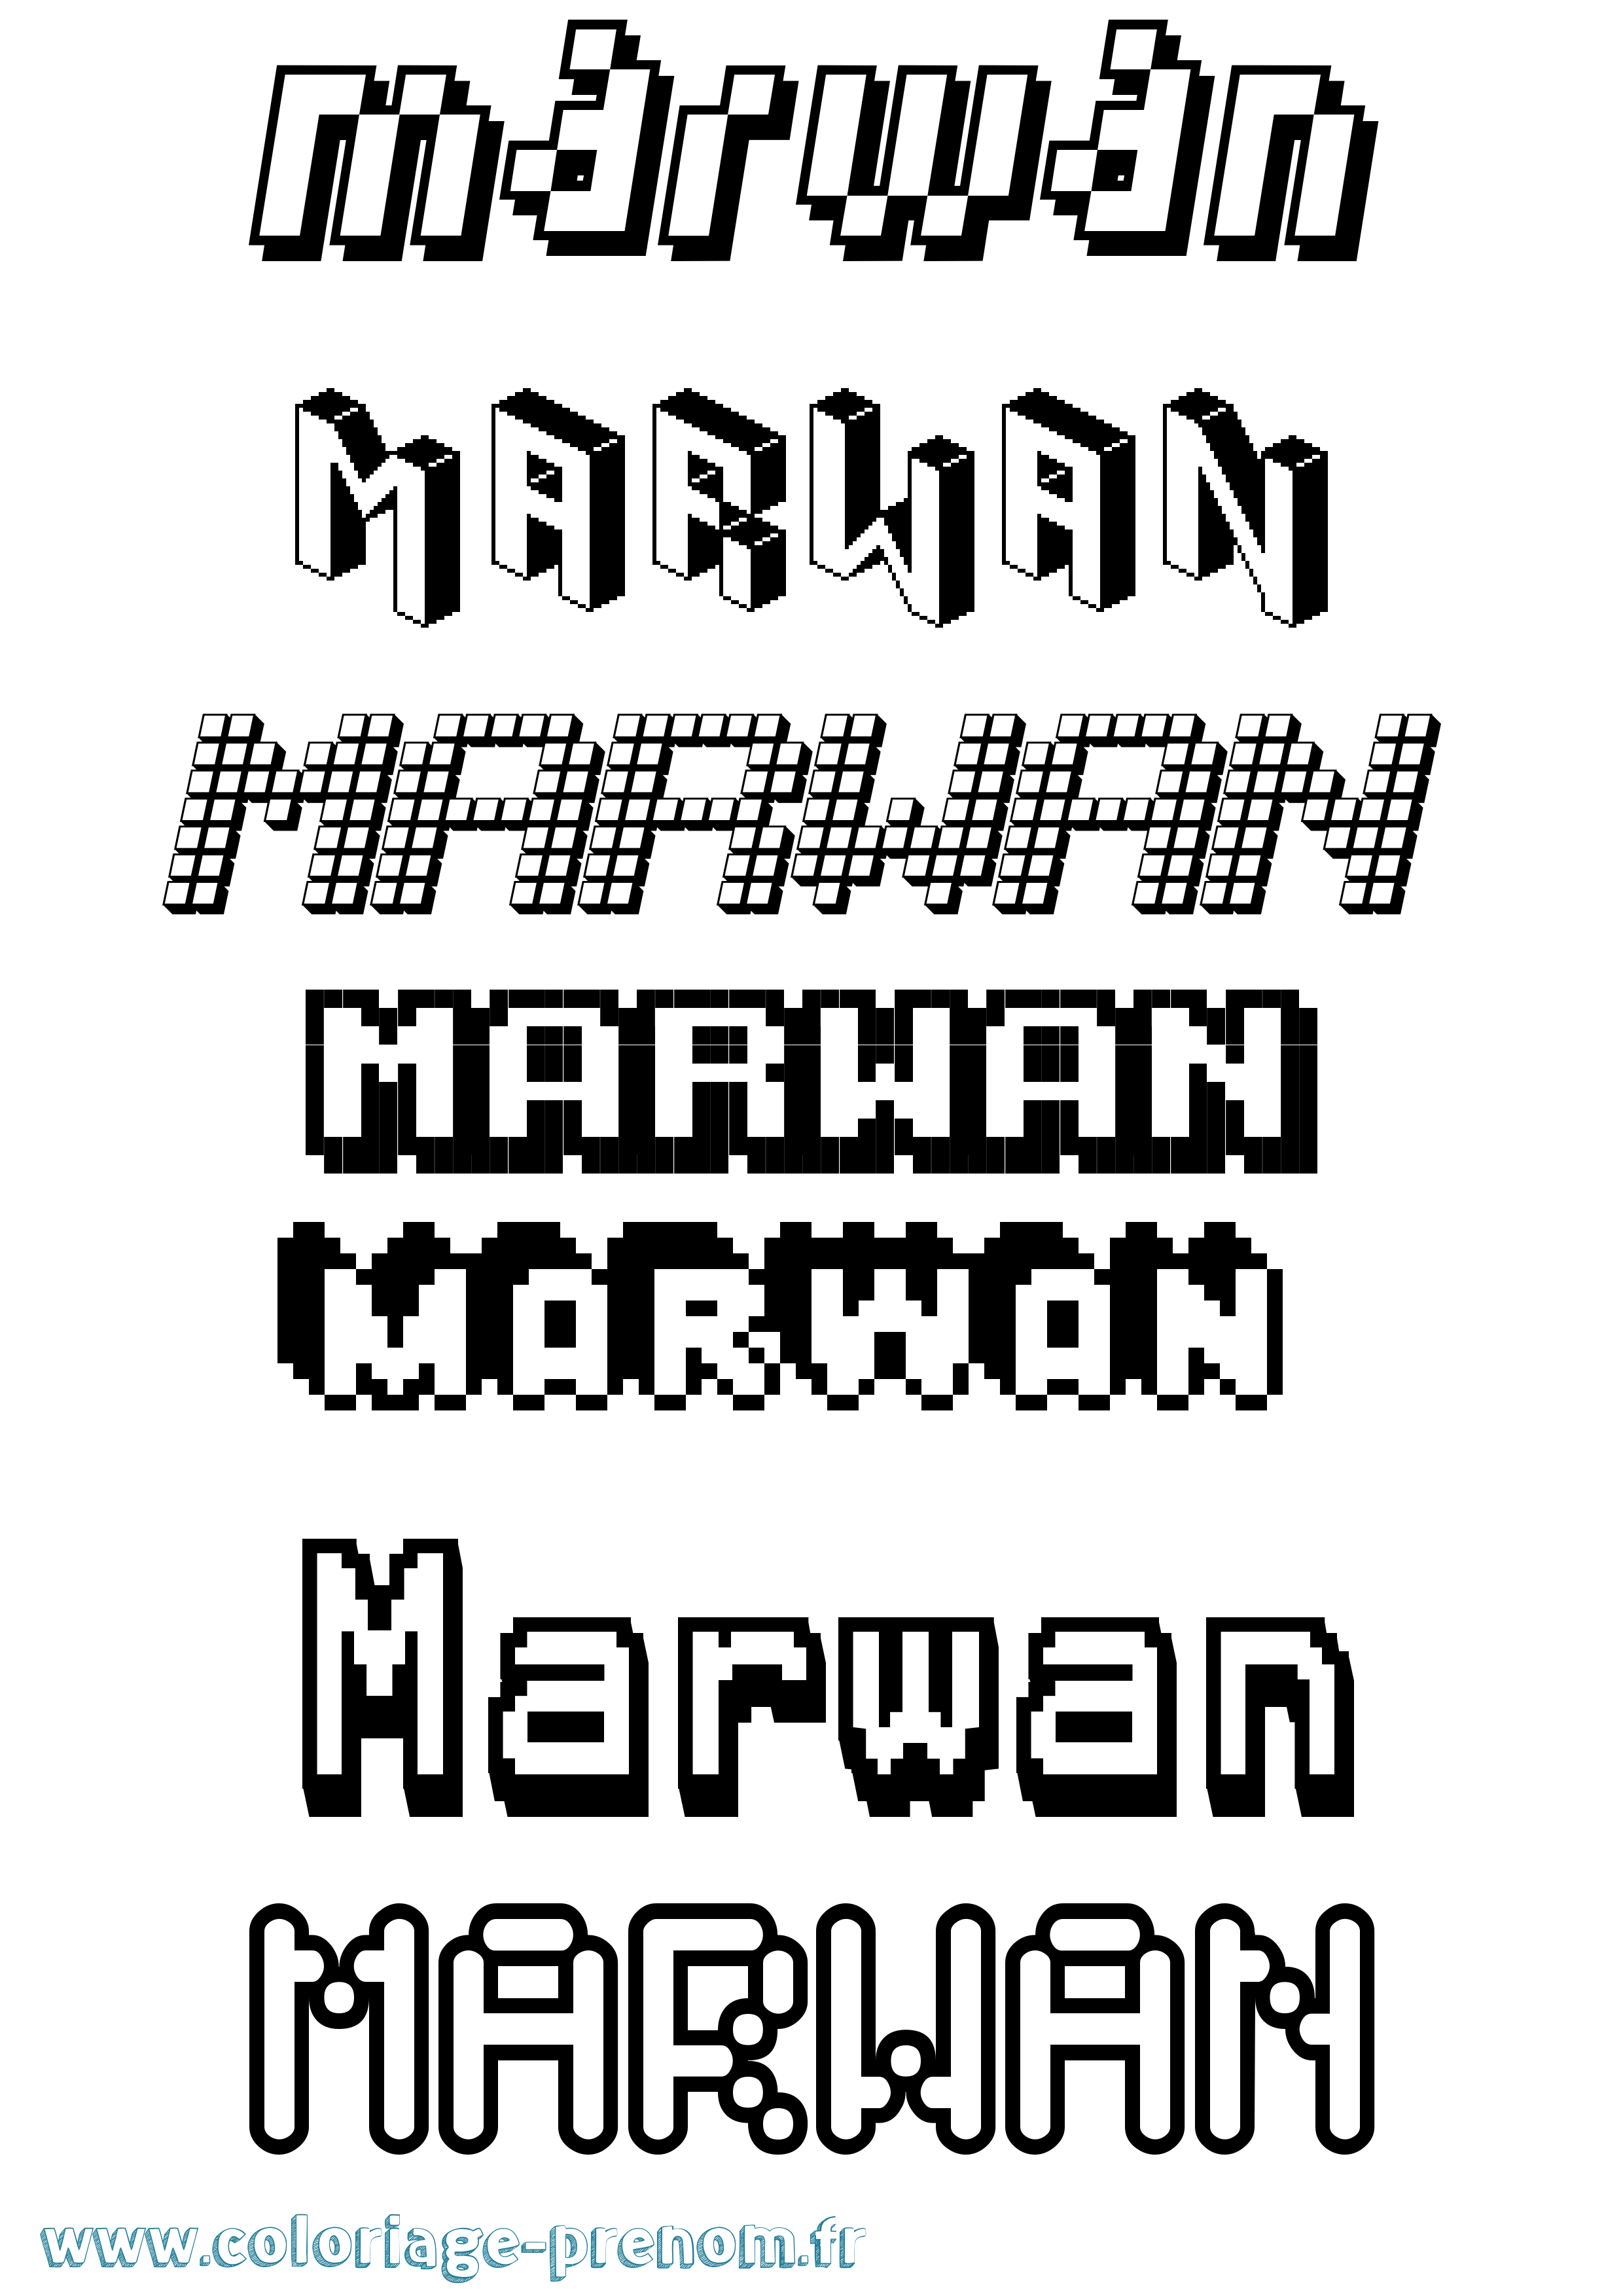 Coloriage prénom Marwan